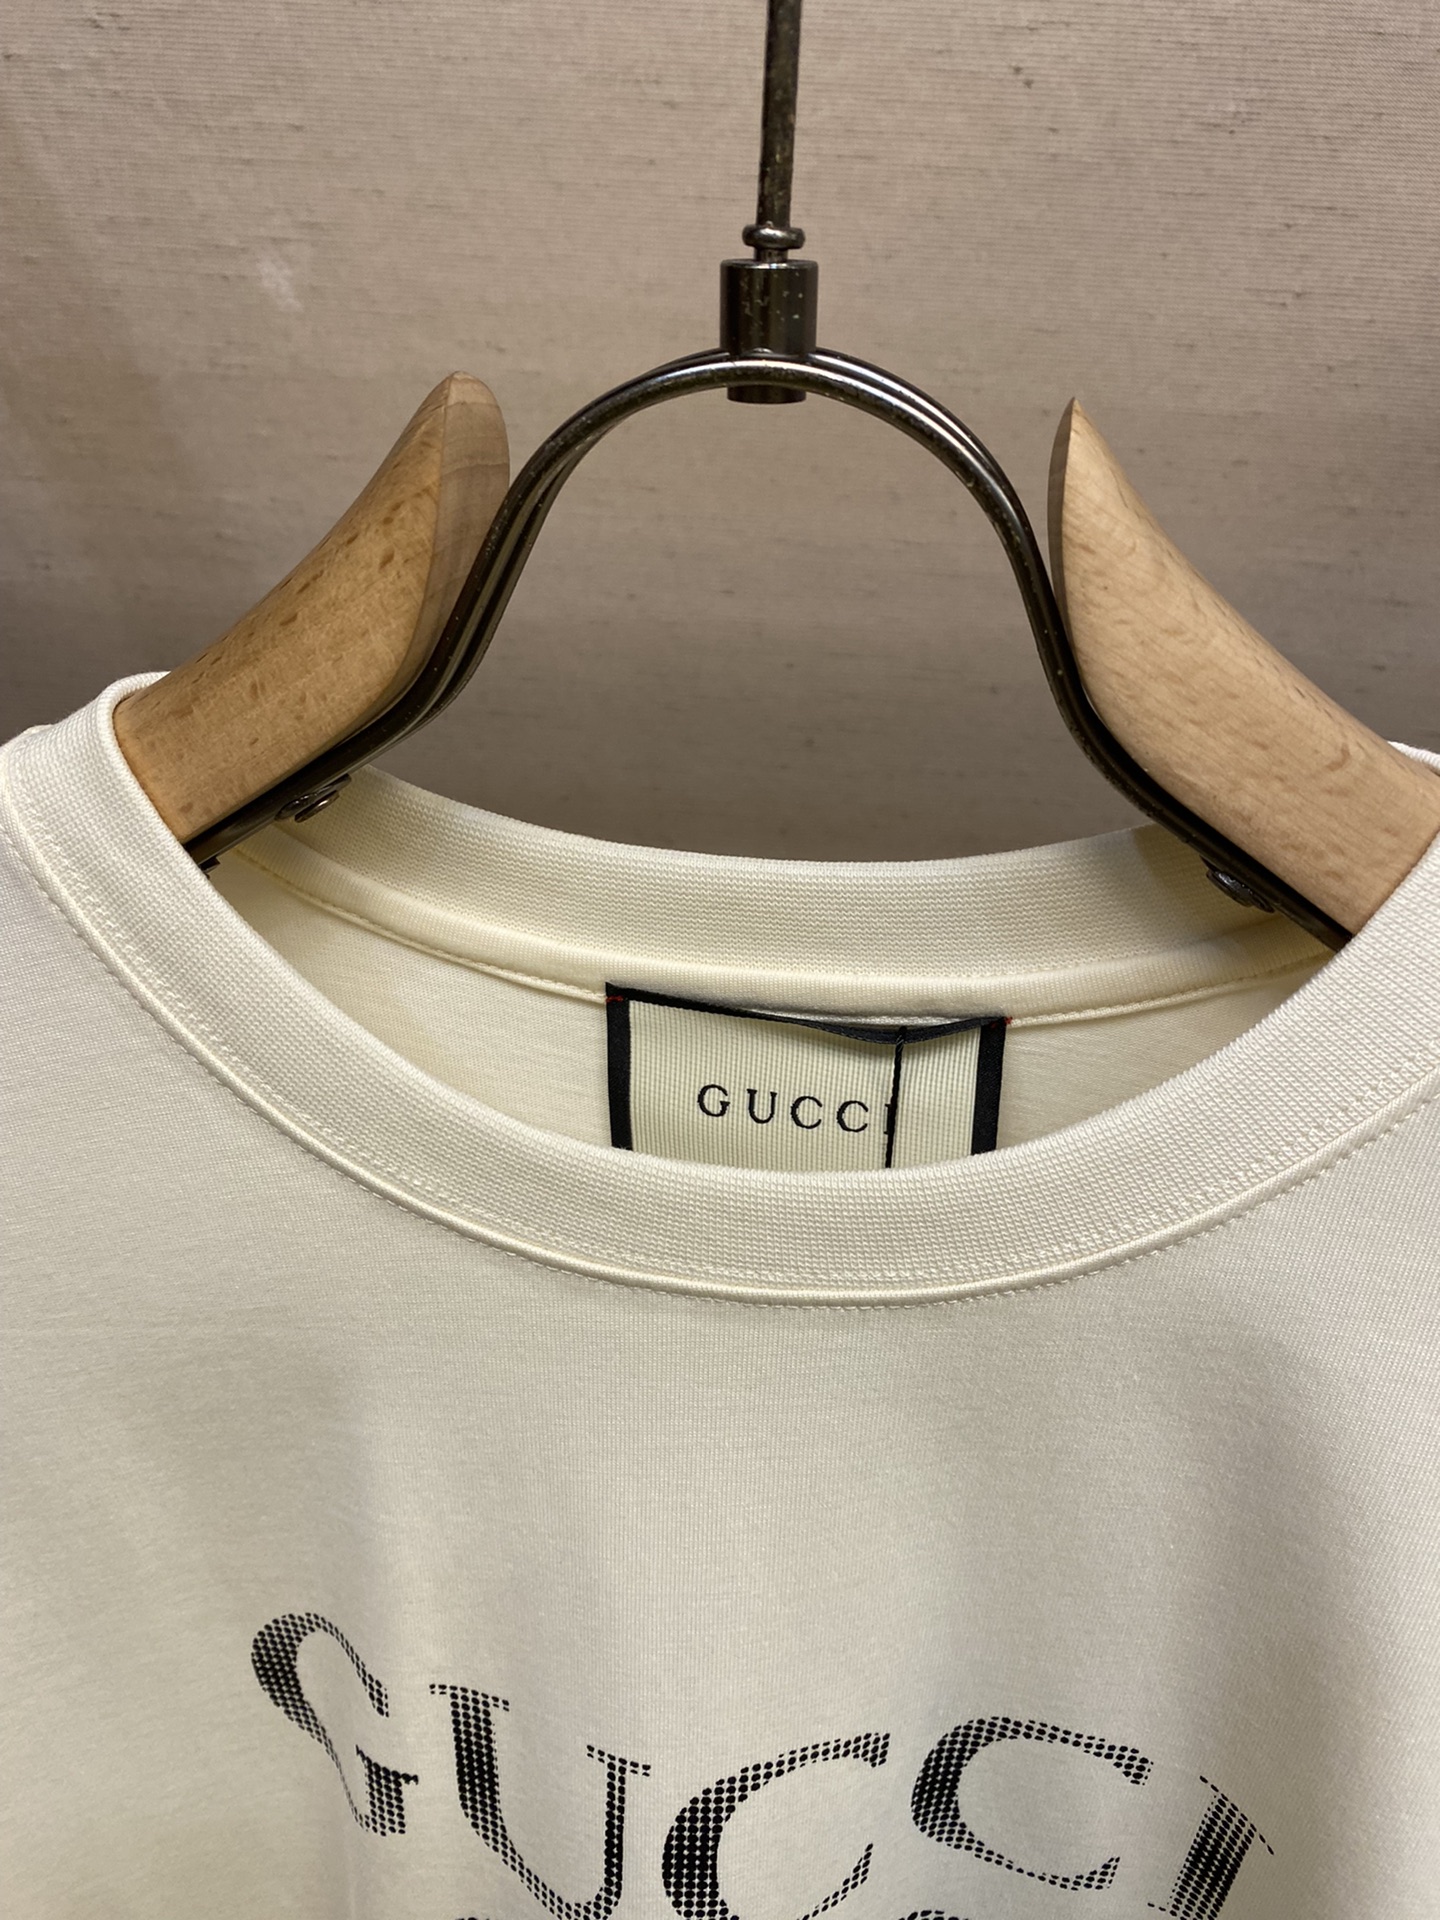 Gucci24春夏限定新款双GG印花情侣款短袖T恤情侣街拍的时尚款短TEE炸街系列经典再现的双GG印花l